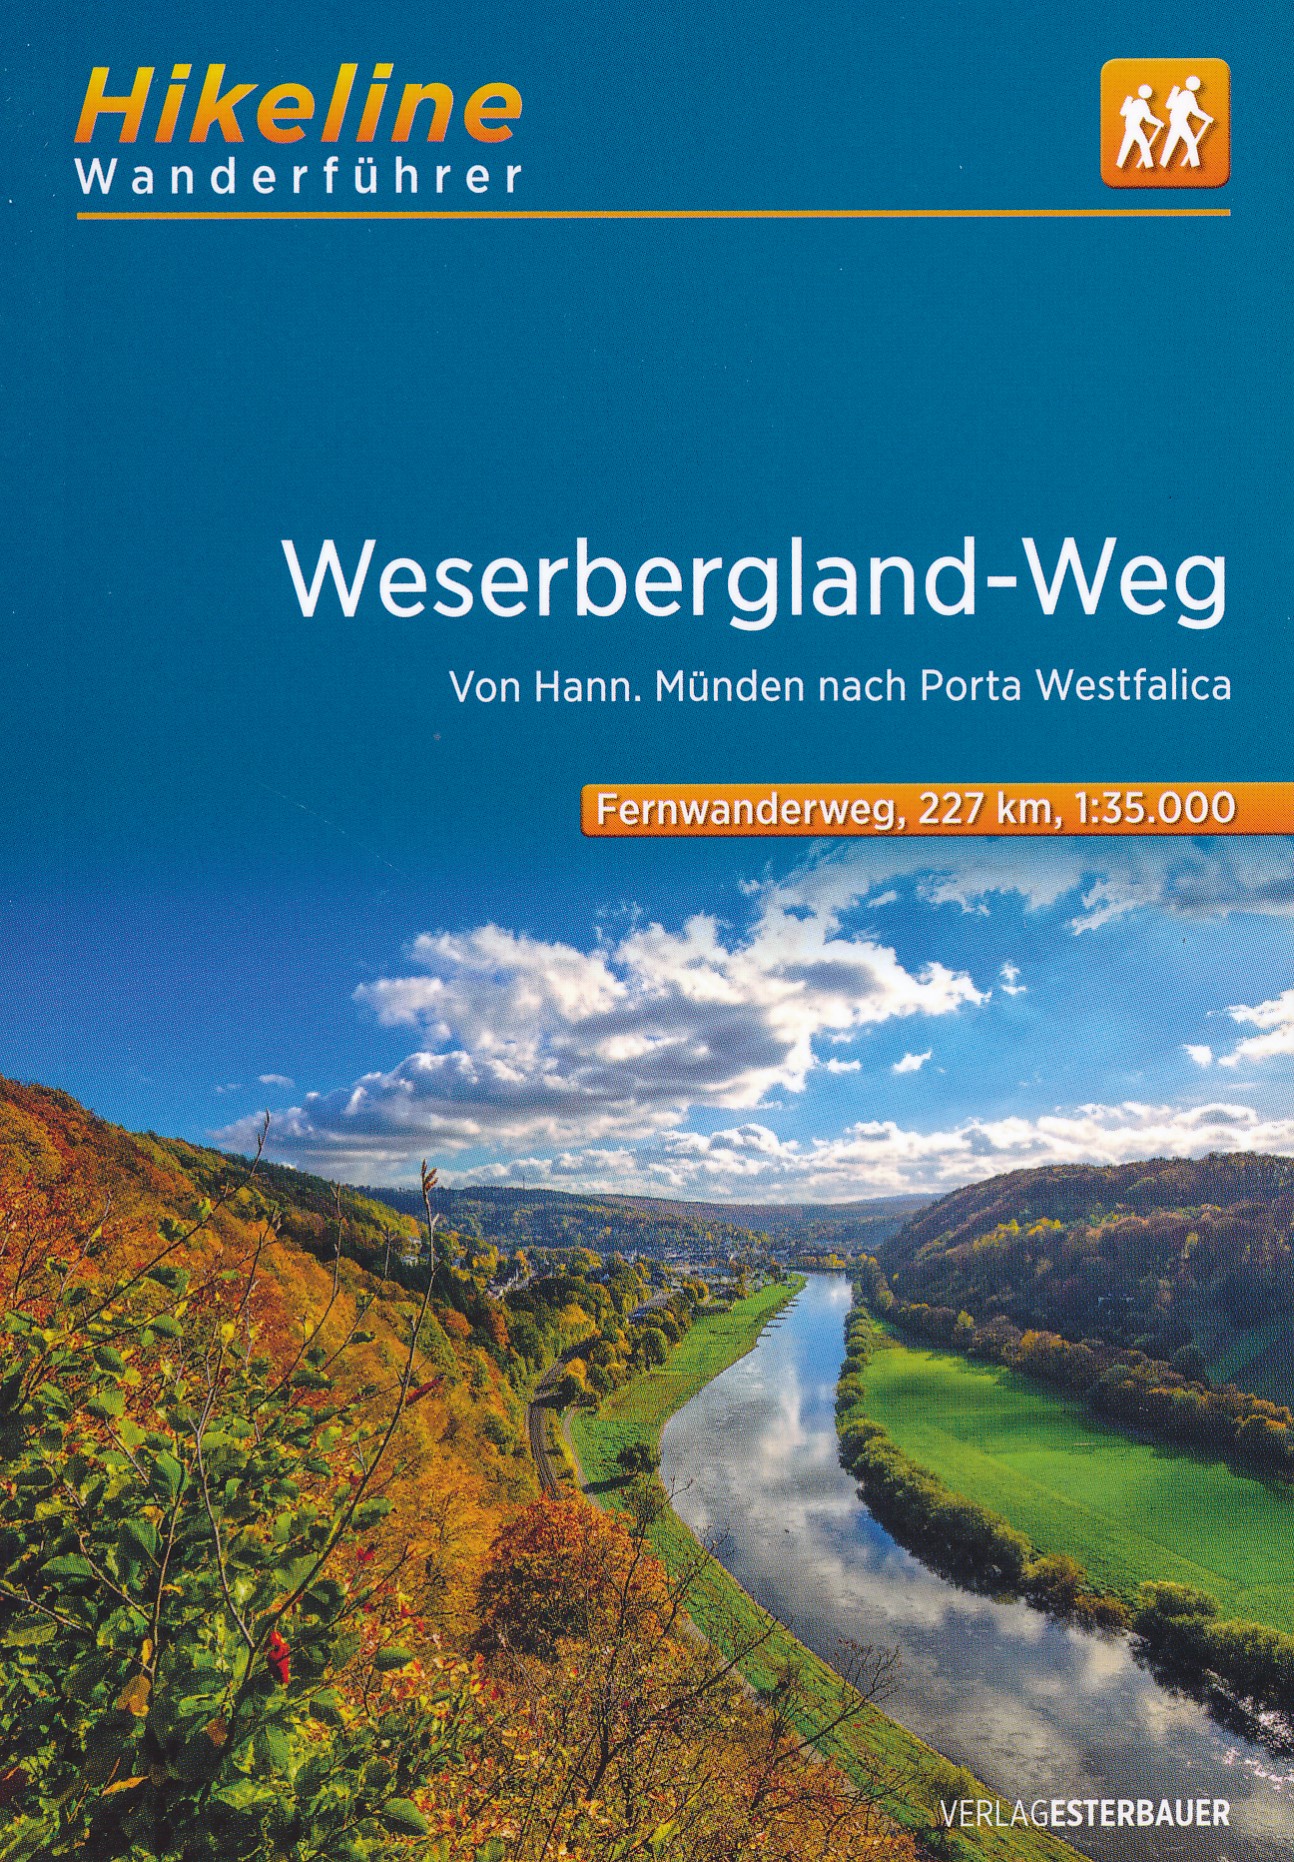 Online bestellen: Wandelgids Hikeline Weserbergland-Weg | Esterbauer